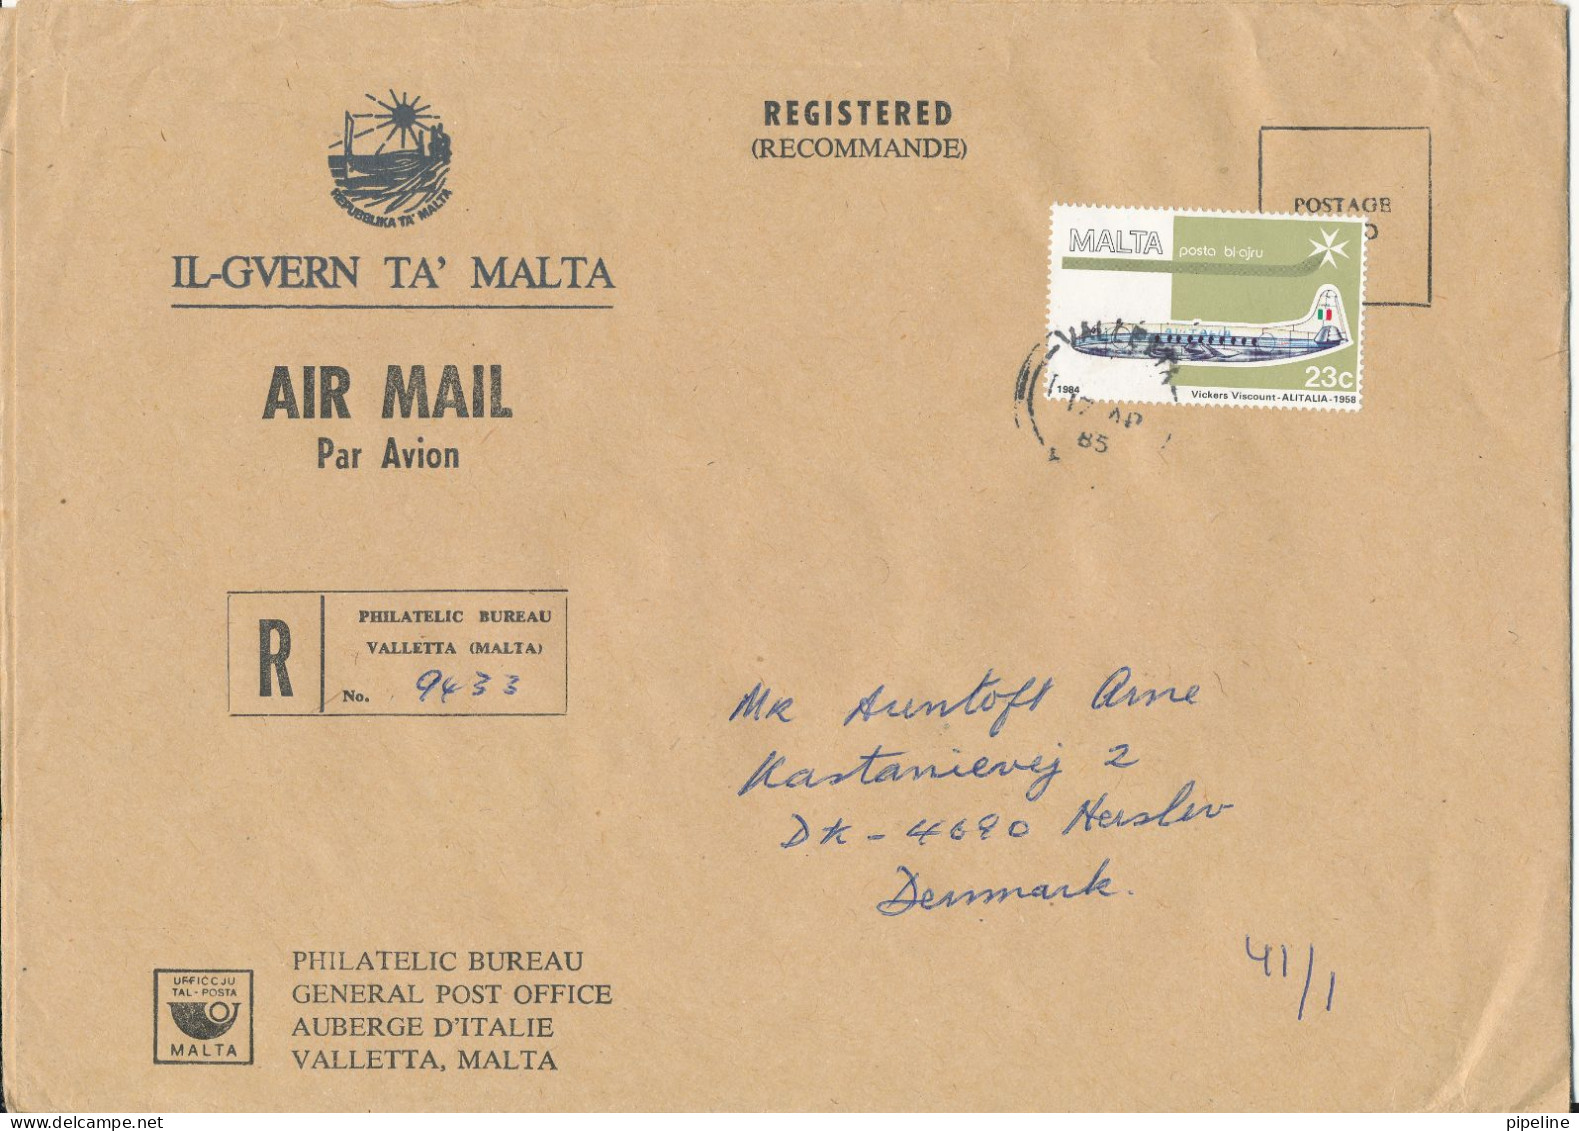 Malta Registered Cover Sent To Denmark 17-4-1985 Single Franked - Malte